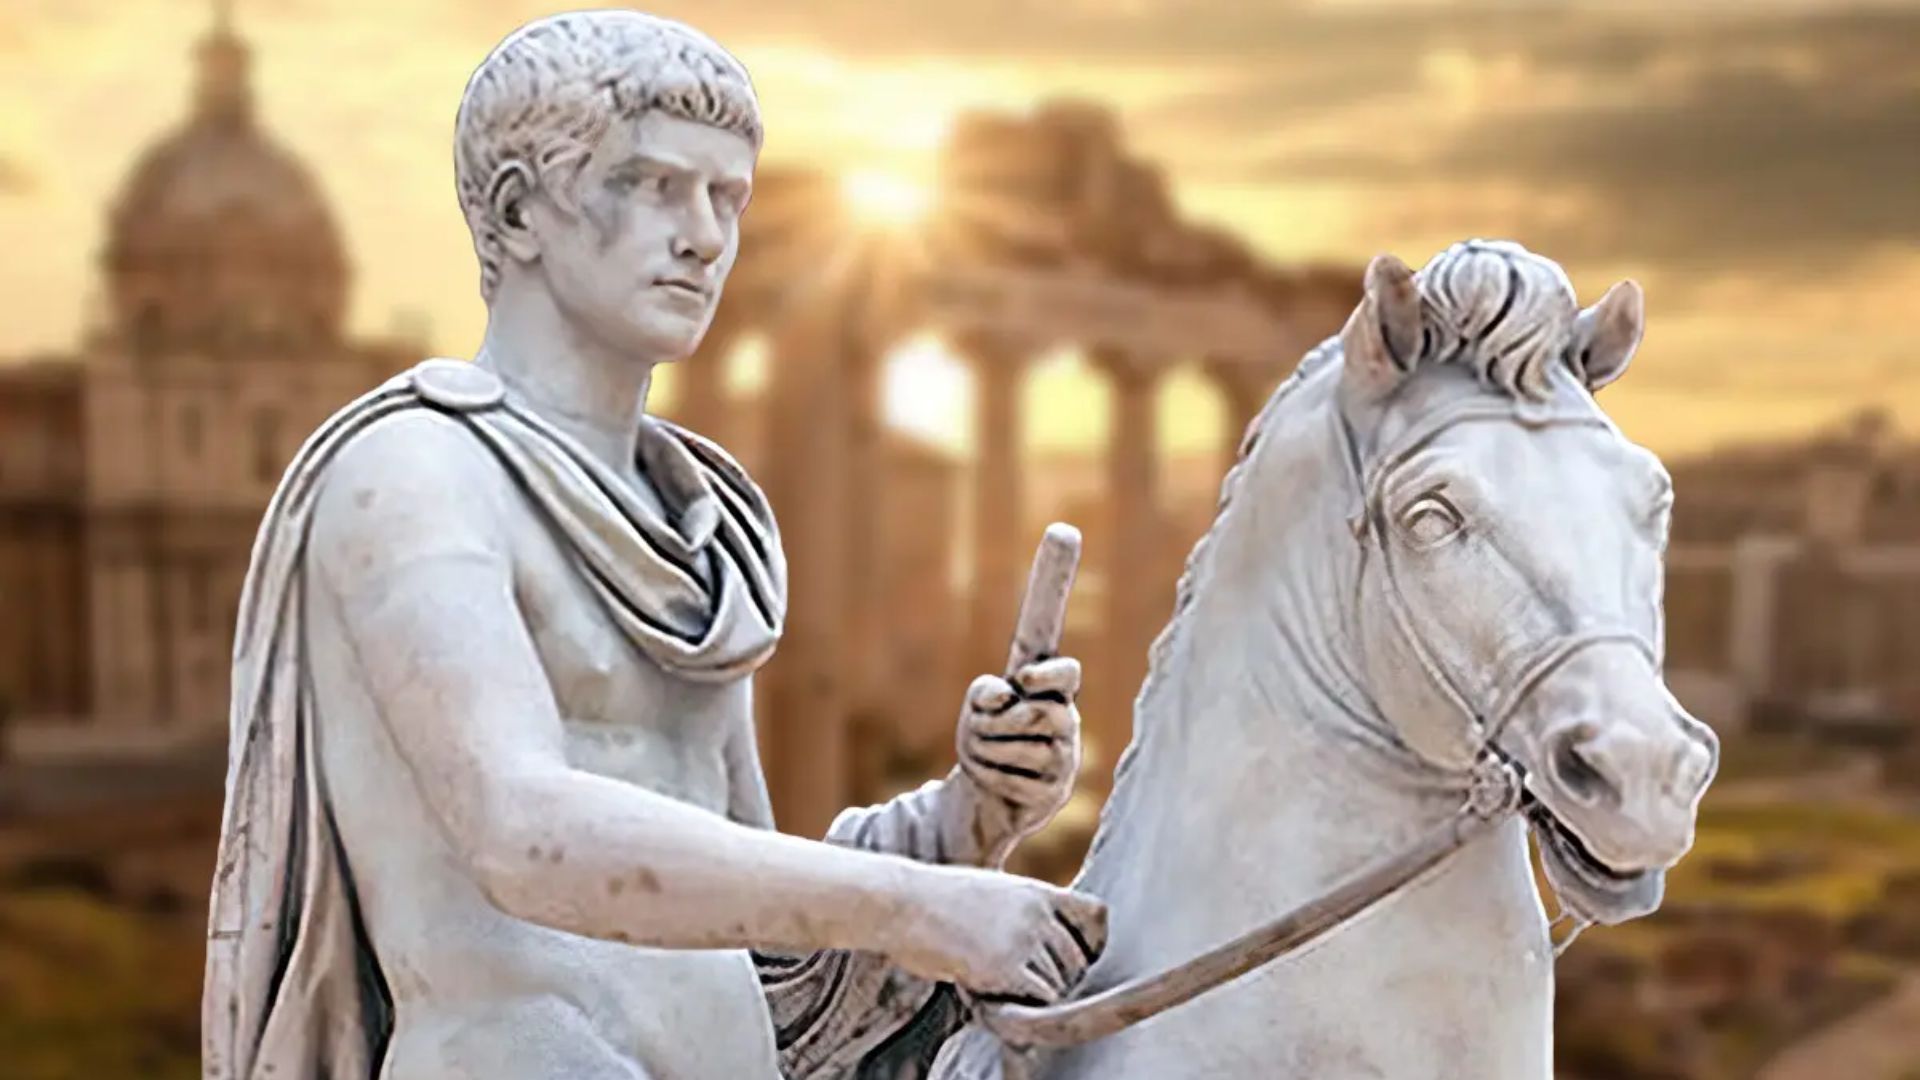 Caligula: Kaisar Romawi yang Terkenal Kejam dan Boros